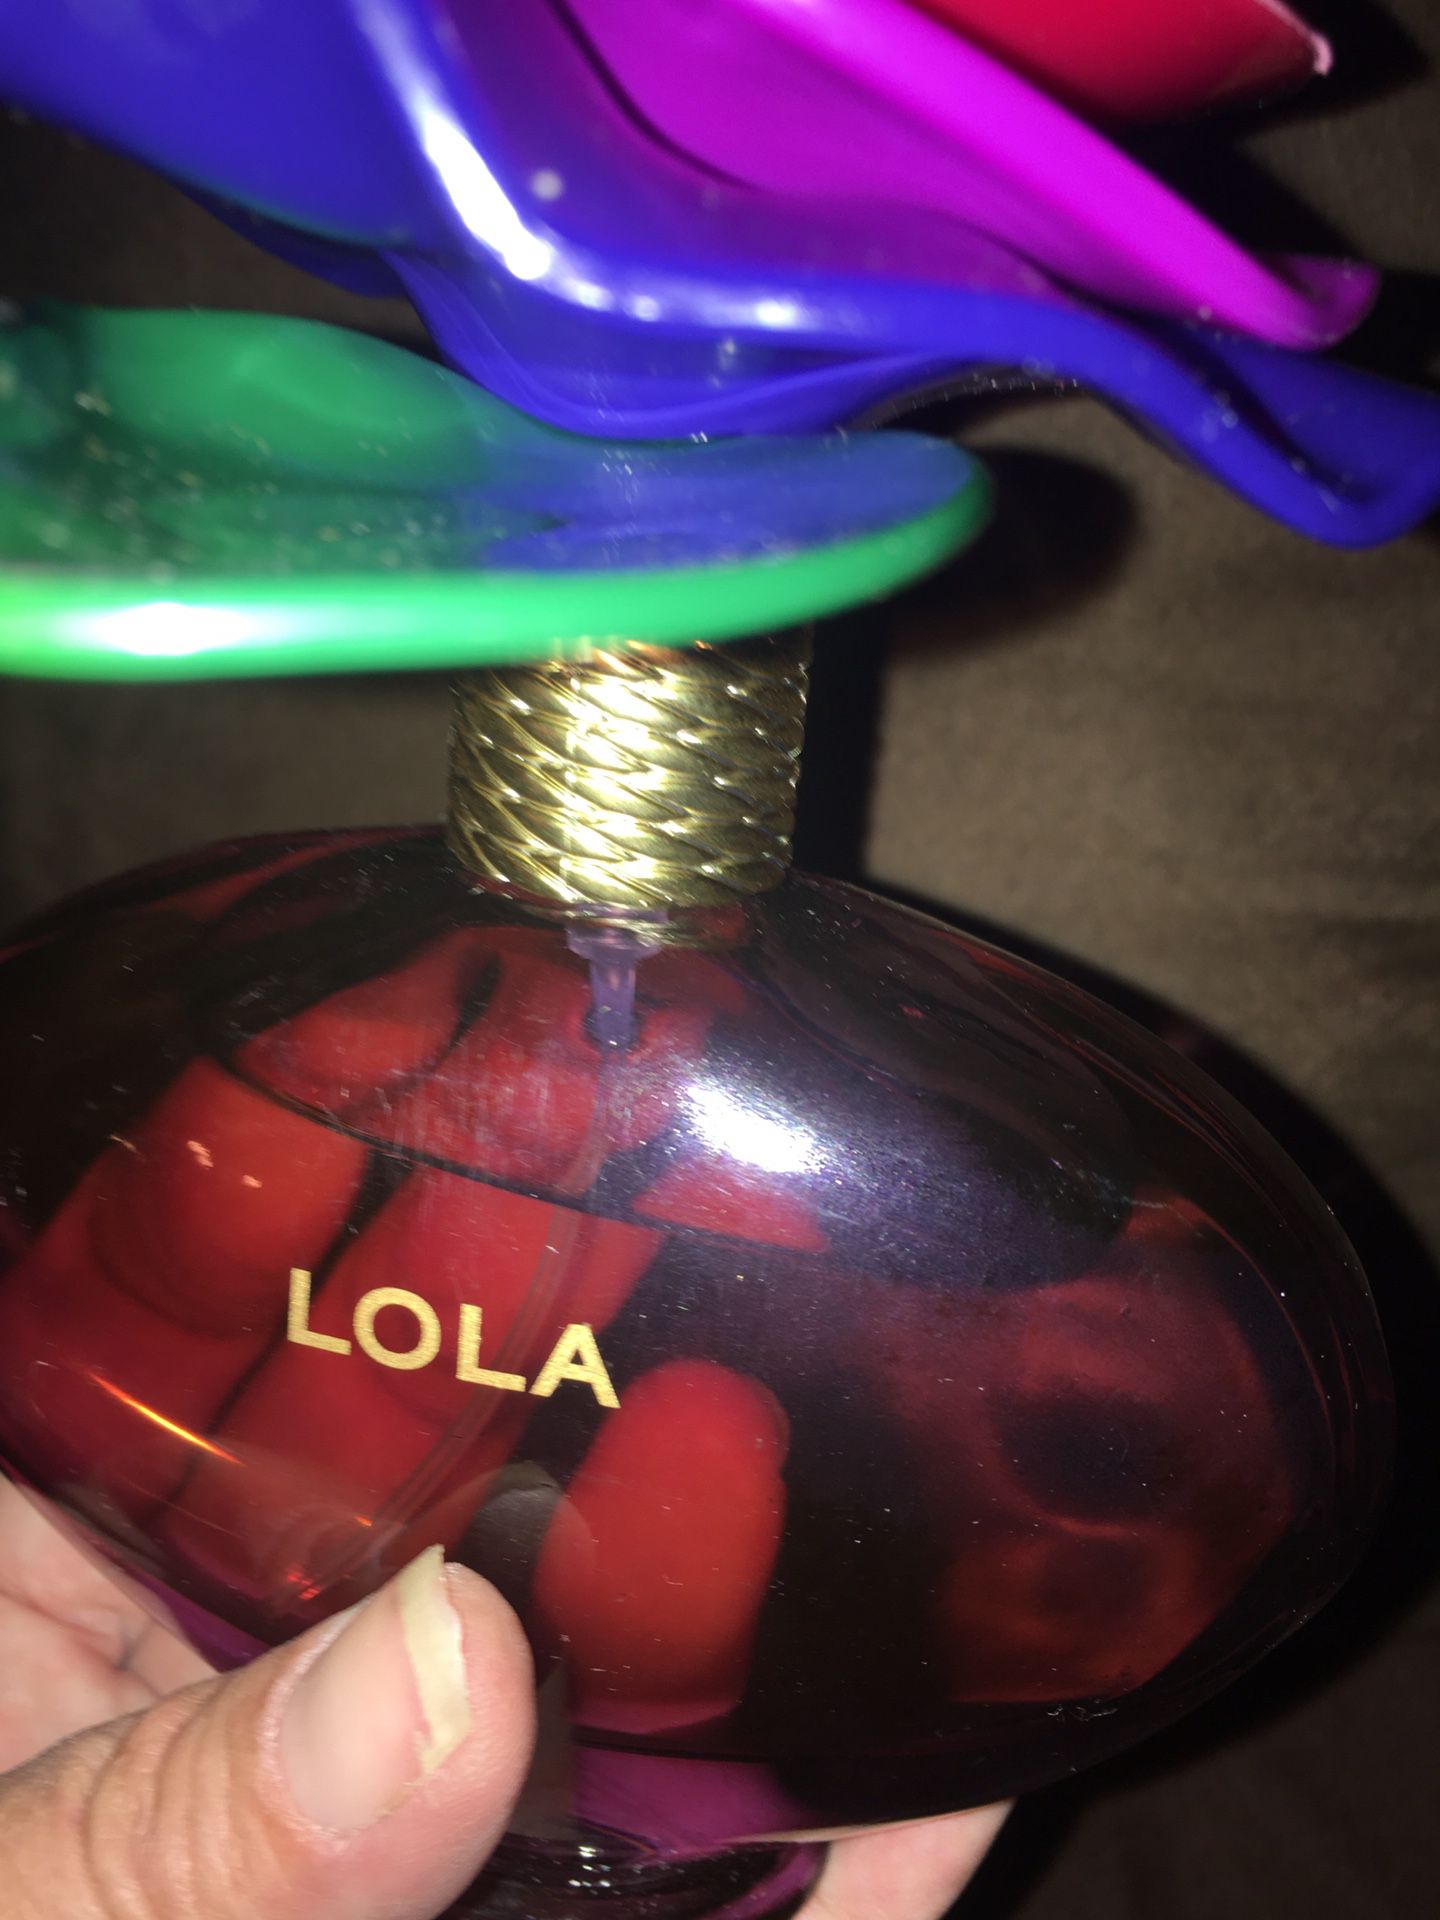 Lola perfume